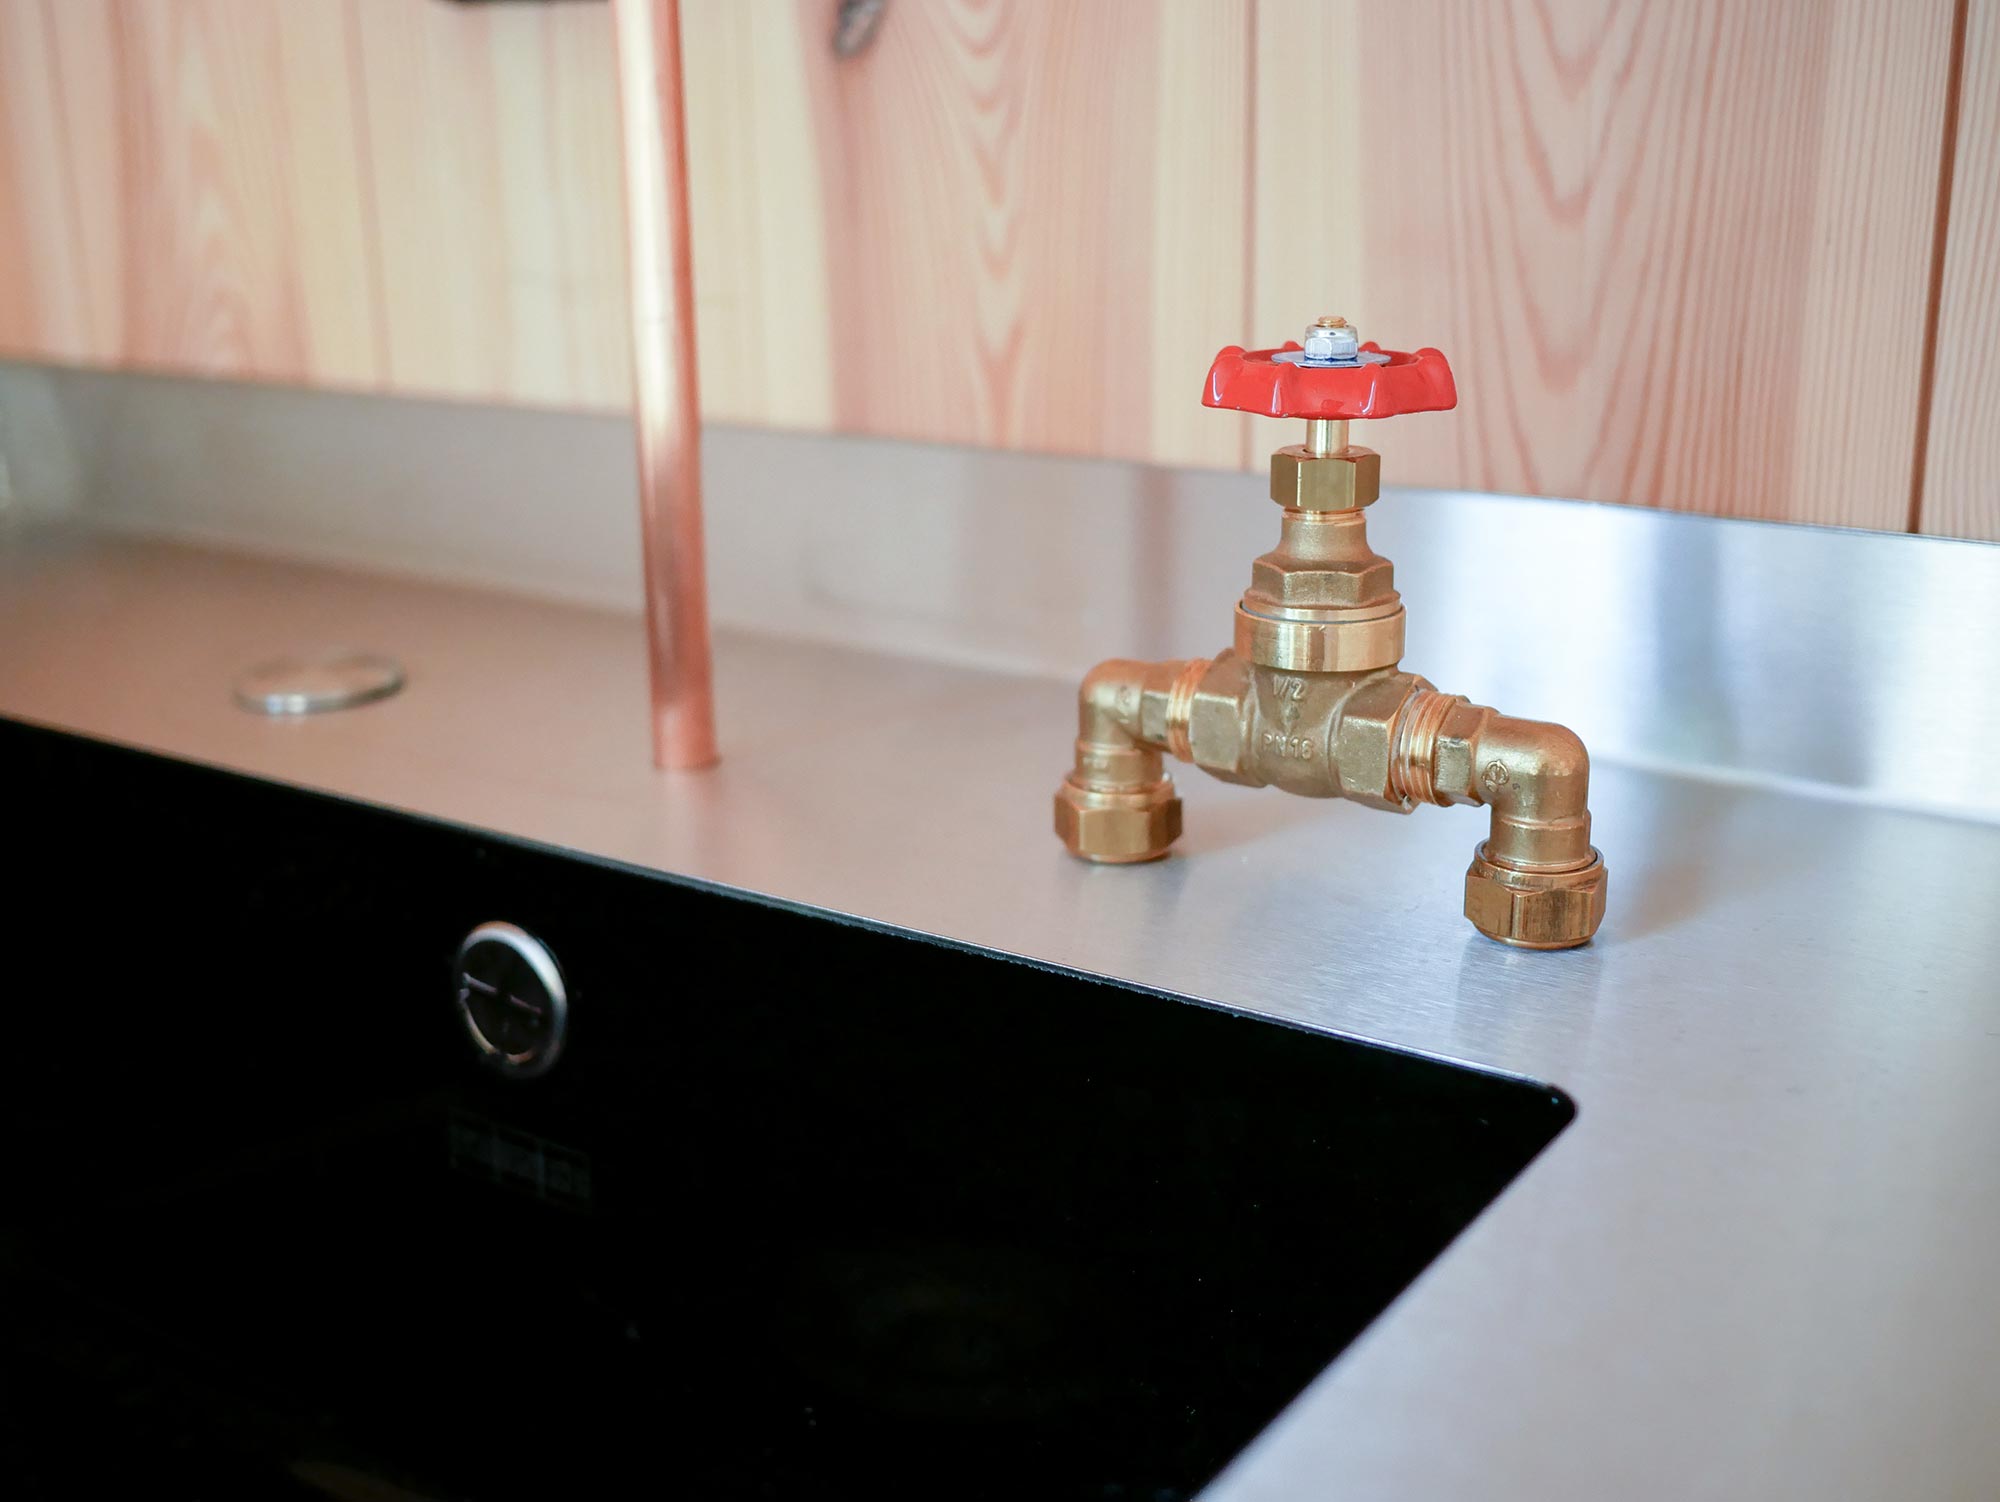 meuble lavabo inox, robinet cuivre avec vanne de plomberie, sapin rouge